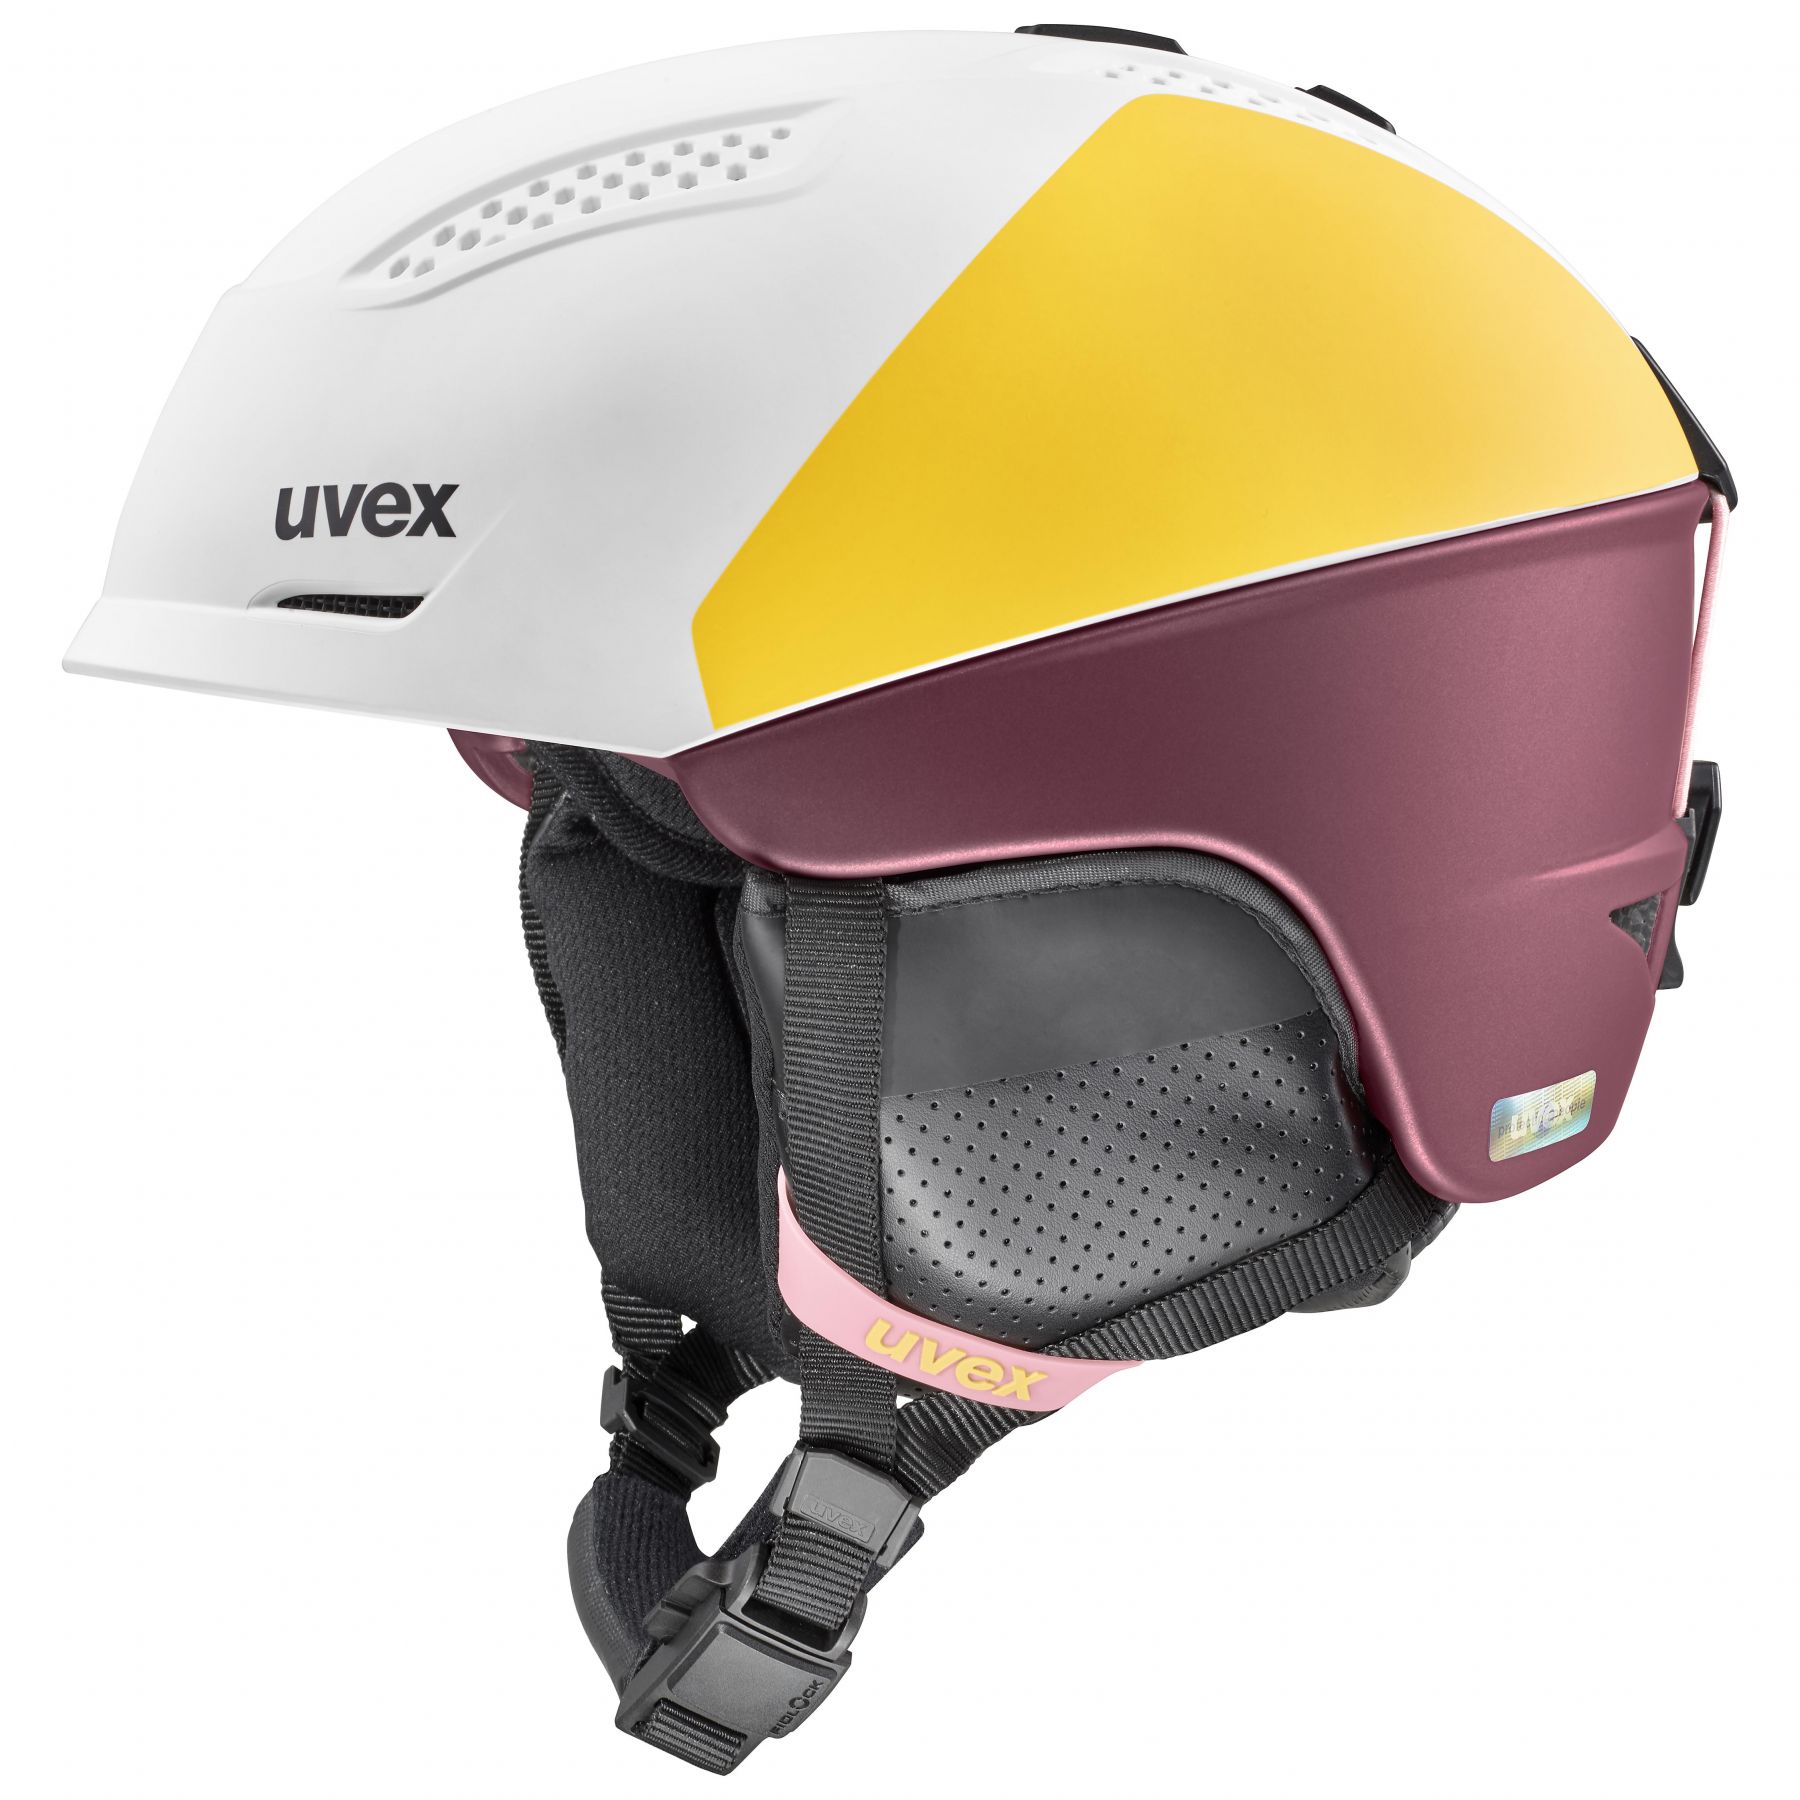 Billede af Uvex Ultra Pro, skihjelm, dame, hvid/gul/mørkerød hos Skisport.dk